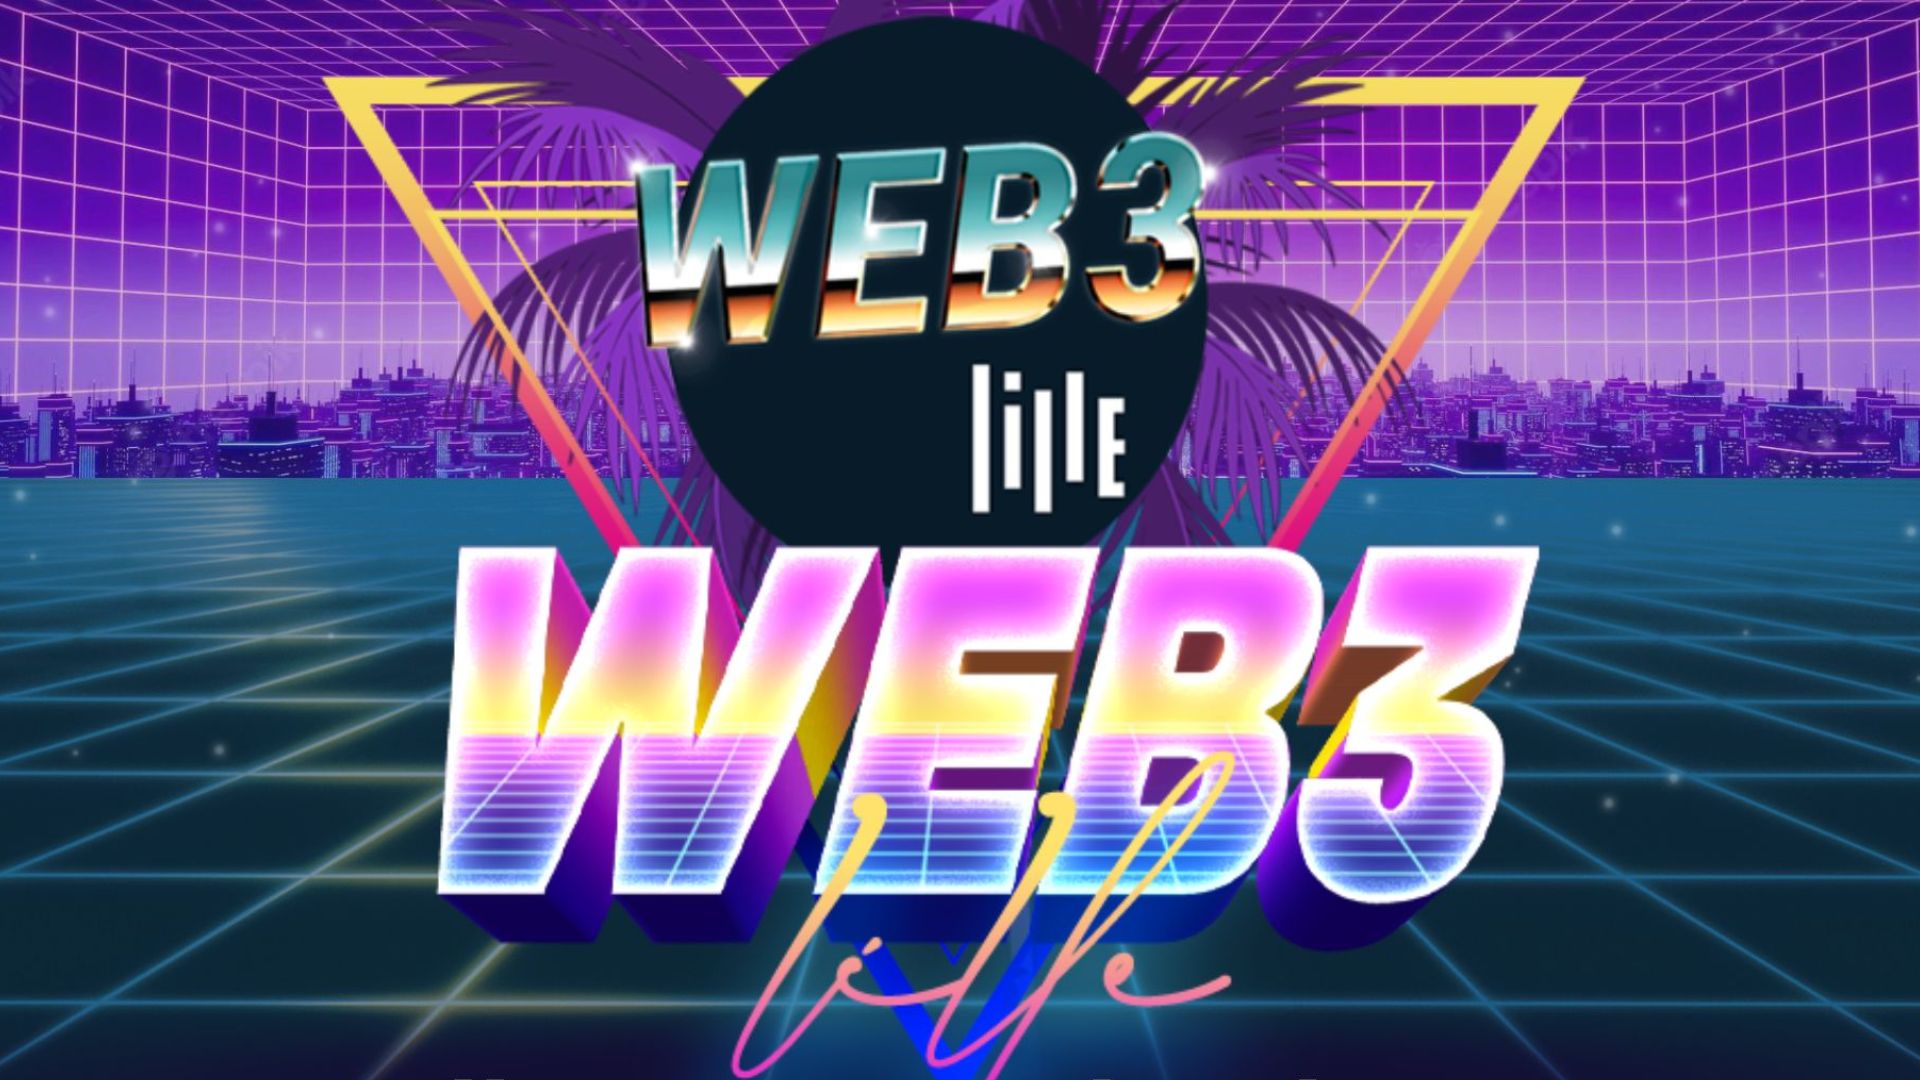 WEB 3 LILLE